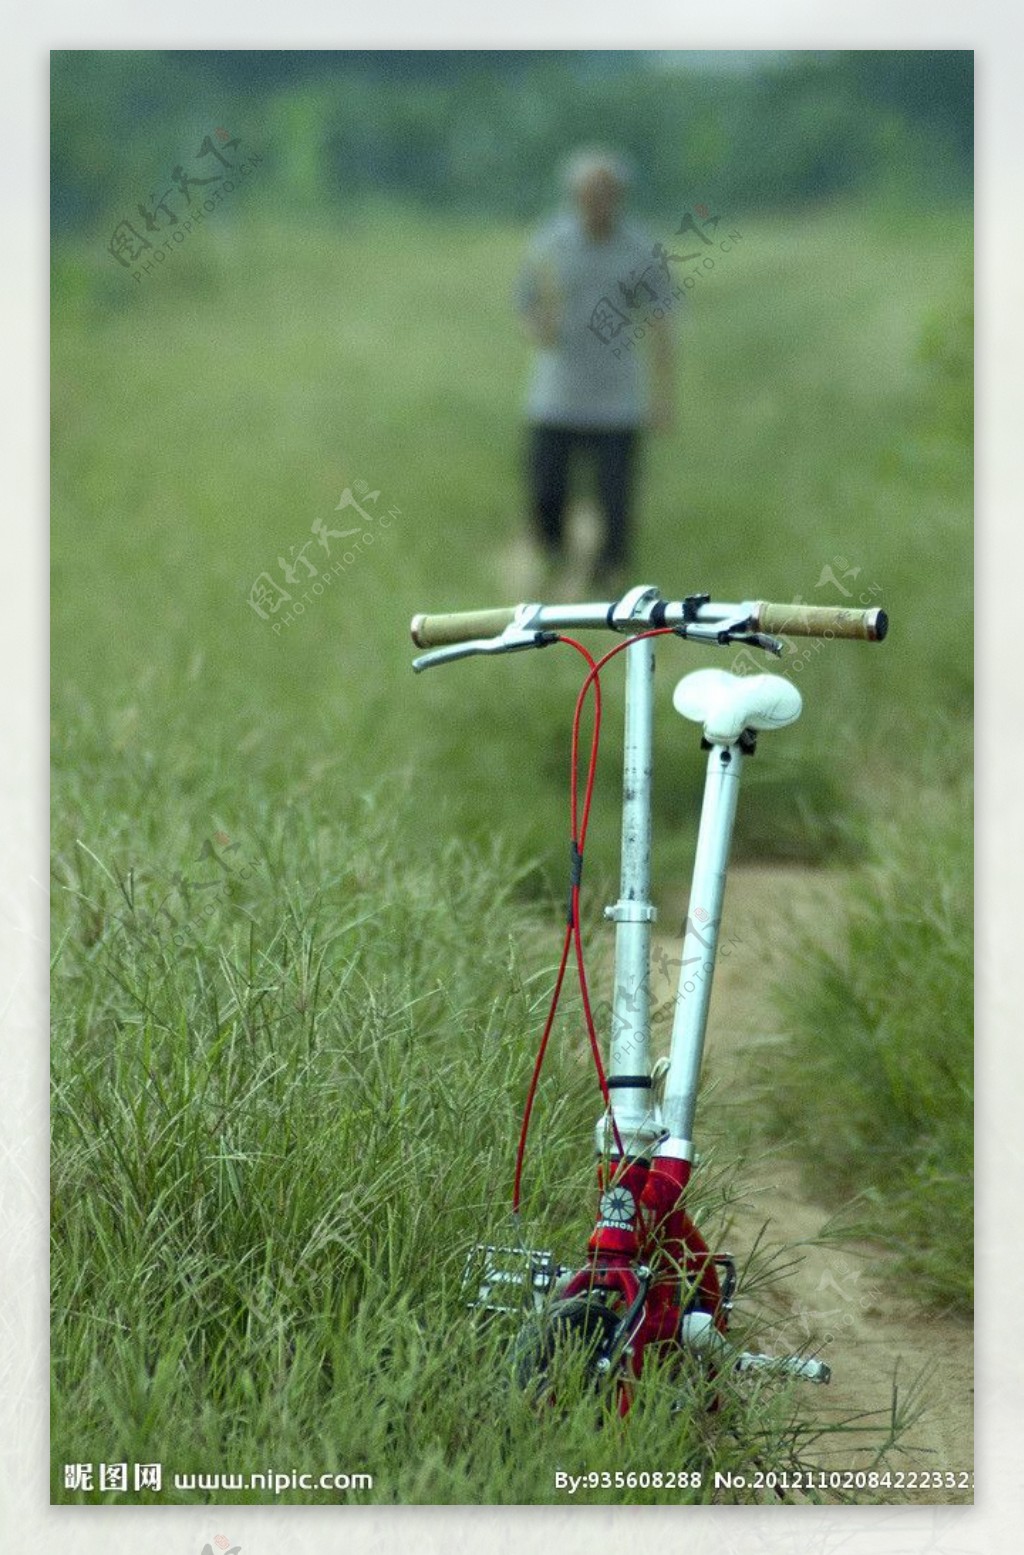 Lovepik- صورة PNG-400520012 id الرسومات بحث - صور فتى يركب دراجة هوائية